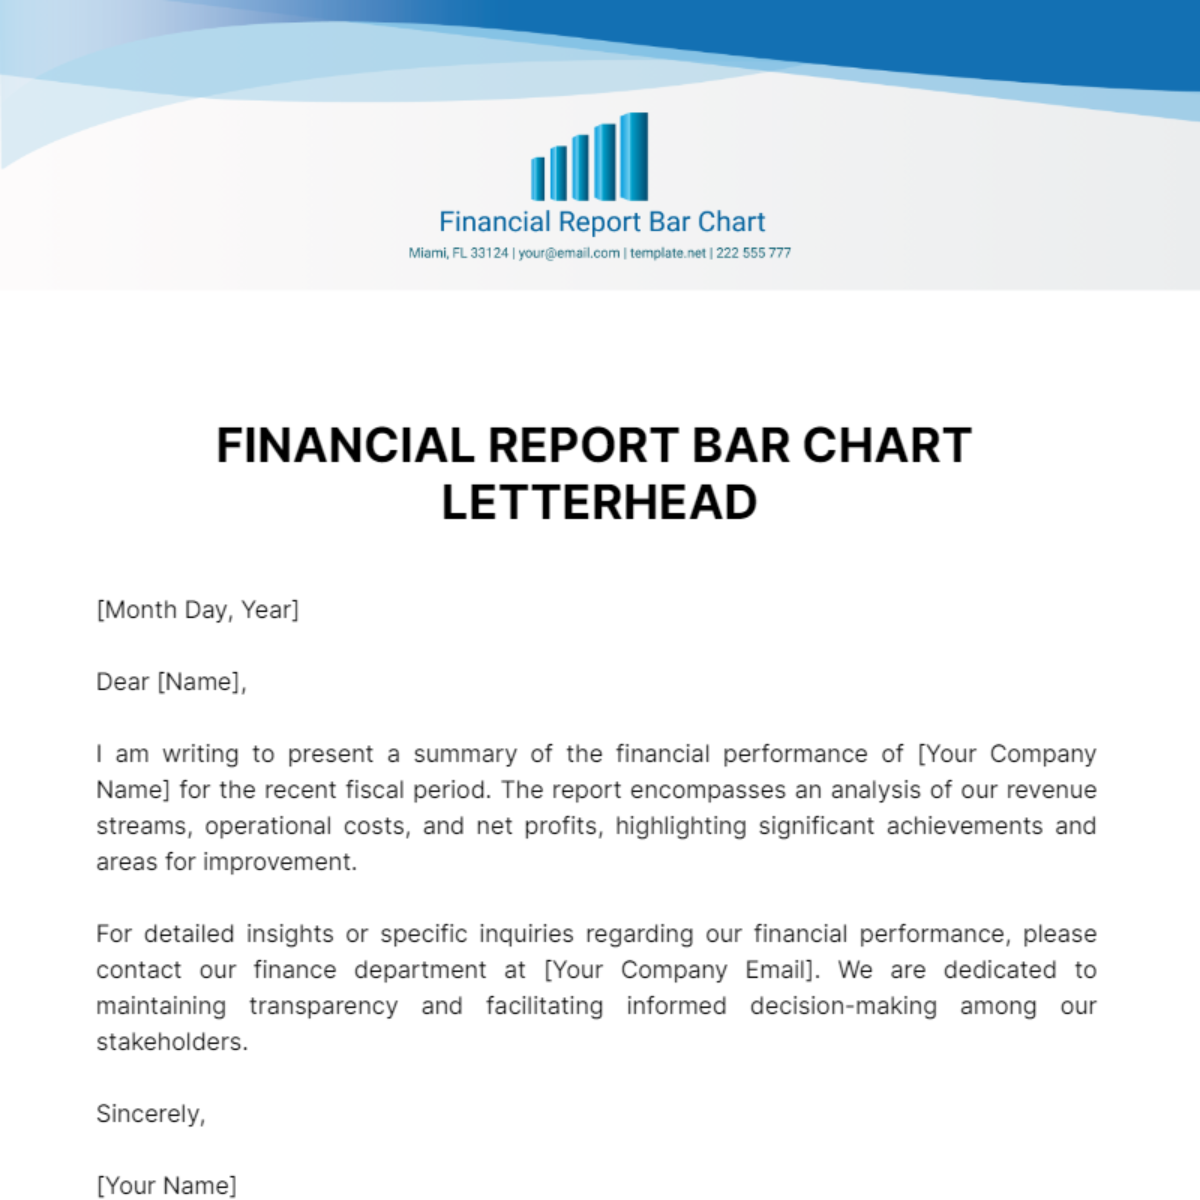 Financial Report Bar Chart Letterhead Template